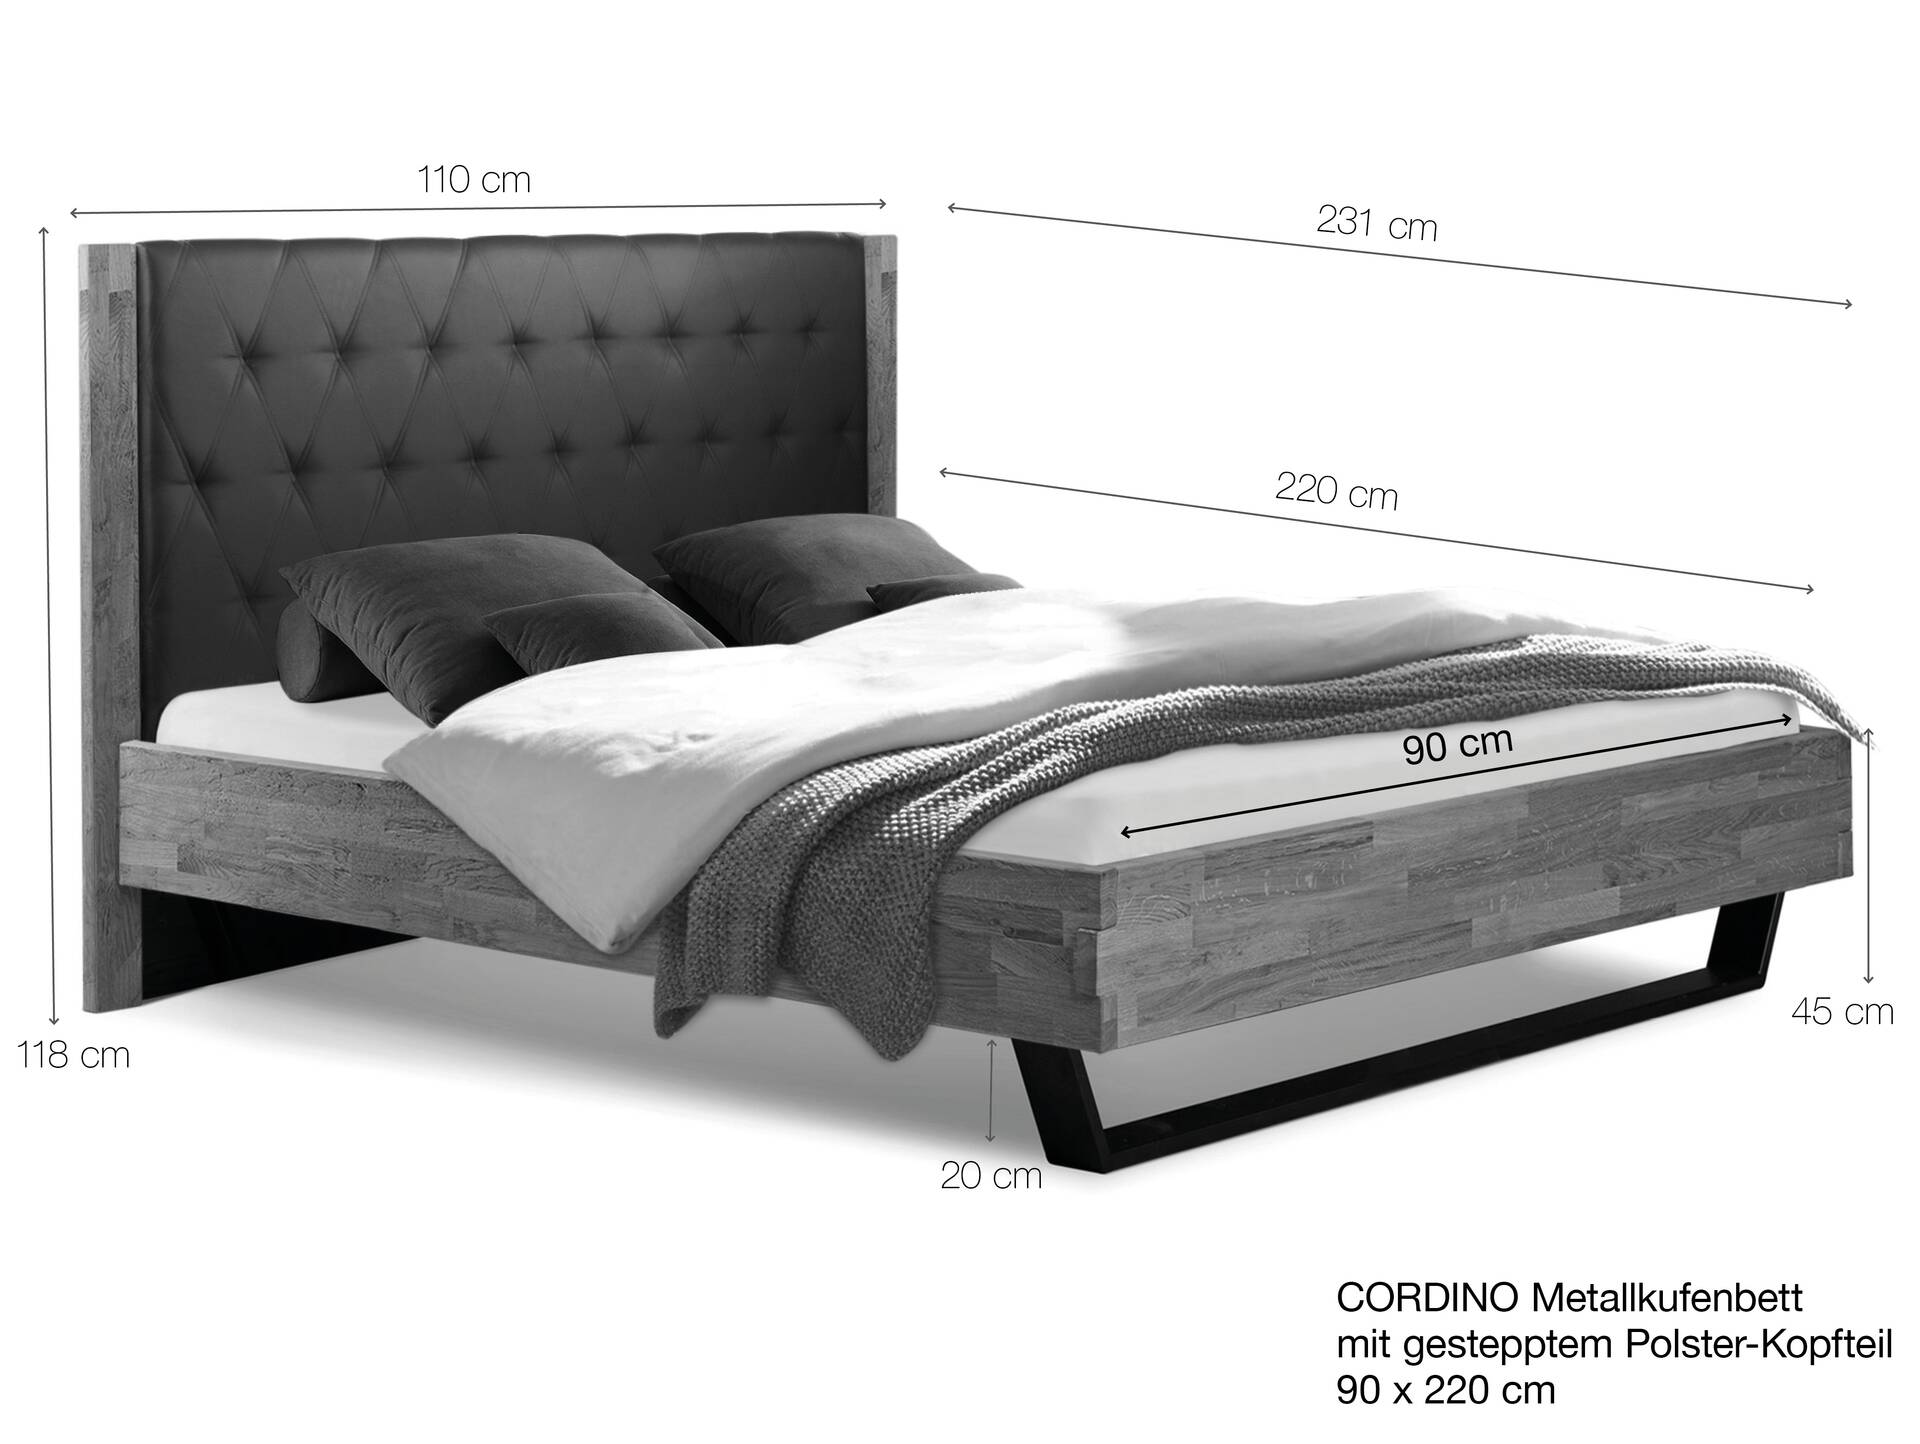 CORDINO Kufenbett aus Eiche mit gestepptem Polsterkopfteil, Material Massivholz 90 x 220 cm | Eiche lackiert | Stoff Braun | gebürstet